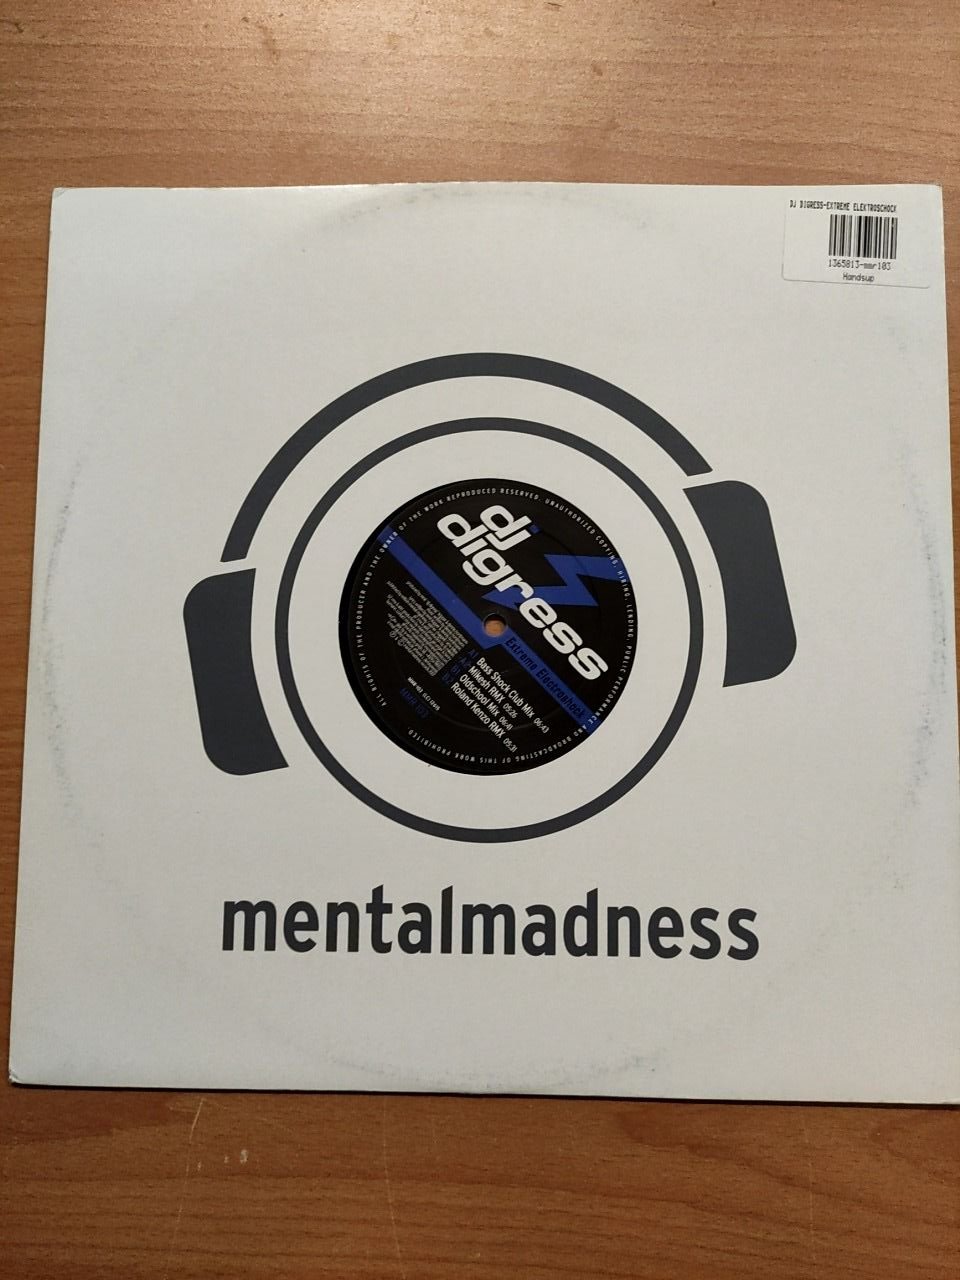 Mentalmadness DJ Digress